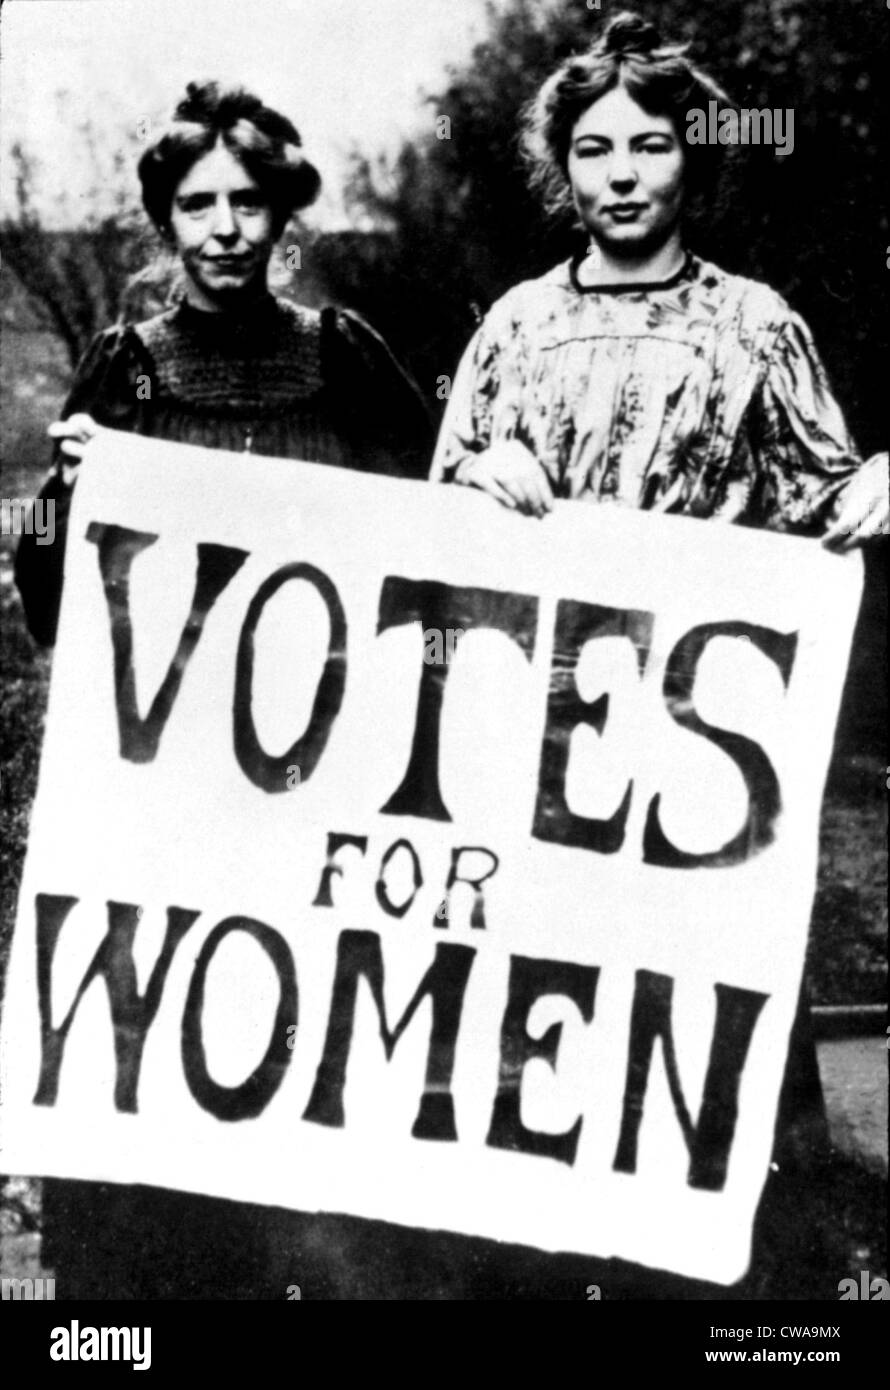 Suffragettes all inizio del secolo scorso holding voti per le donne picket segno, Stati Uniti, 1910s.. La cortesia: CSU Archivi / Everett Foto Stock